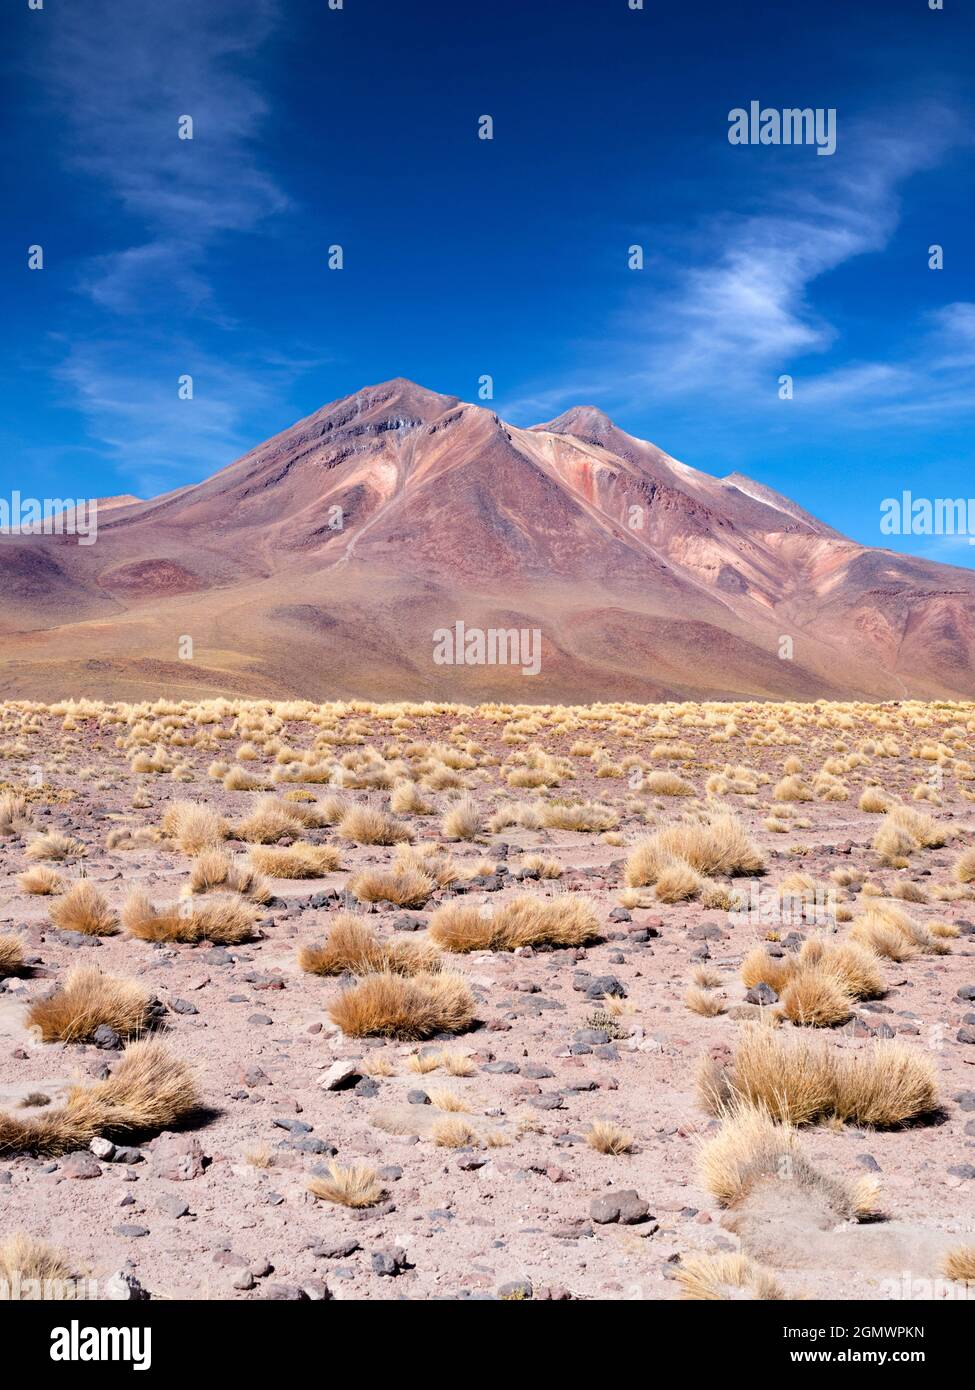 Altiplano chilien, Chili - 26 mai 2018 l'Altiplano chilien est élevé, sec, affamé d'oxygène et élevé par les rayons UV. Pas agréable. Mais ici il offre Banque D'Images